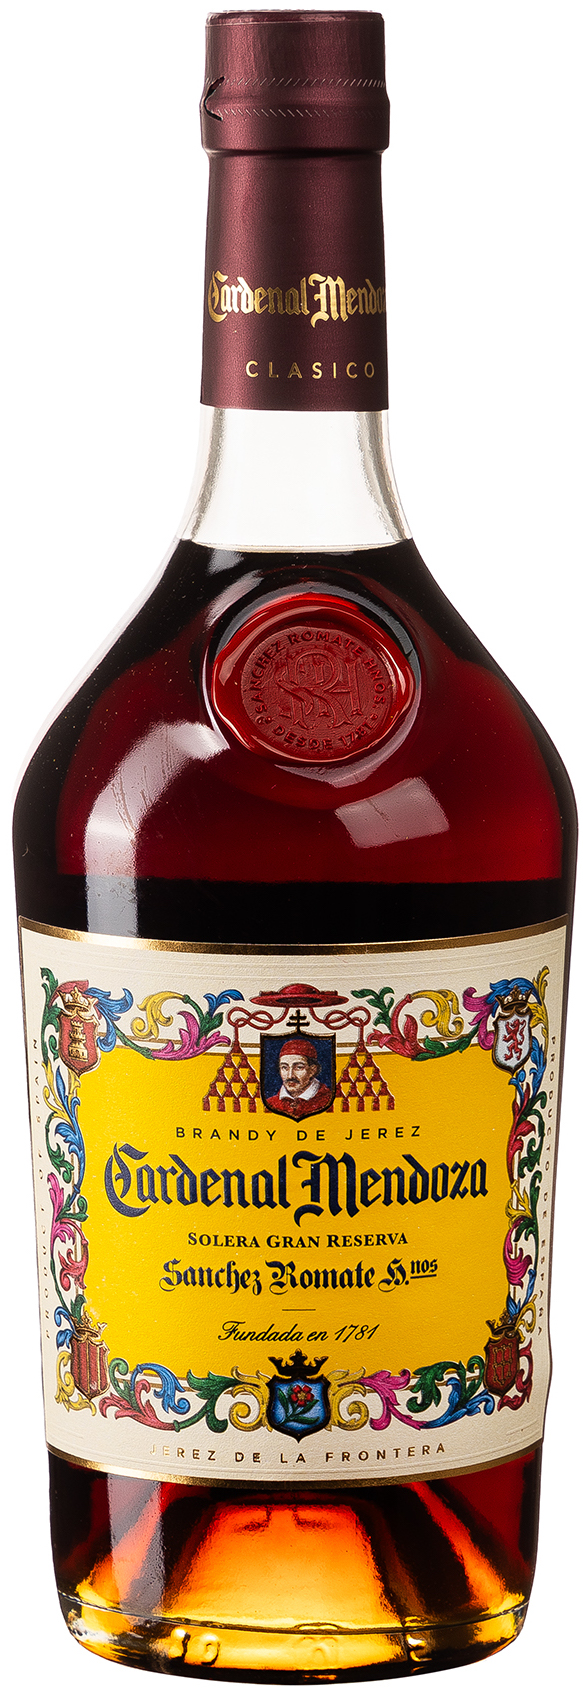 Cardenal Mendoza Solera Gran Reserva Brandy de Jerez 40% vol. 0,7L